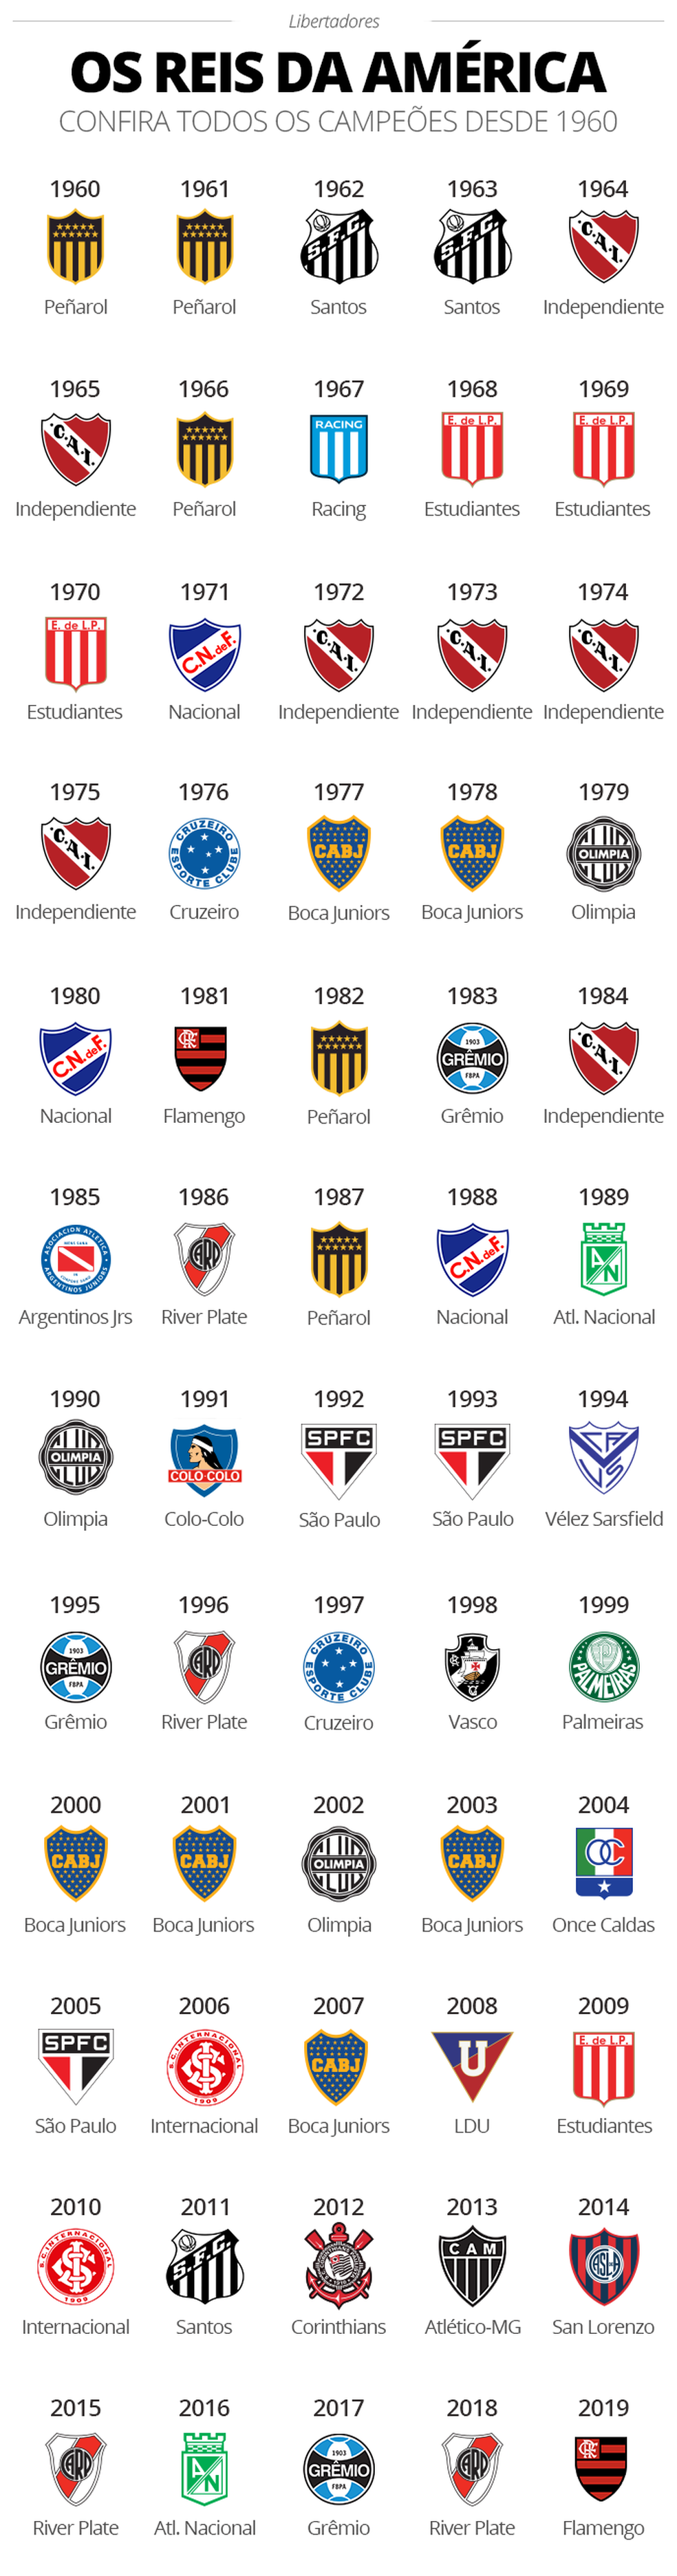 Quem já ganhou a Libertadores?